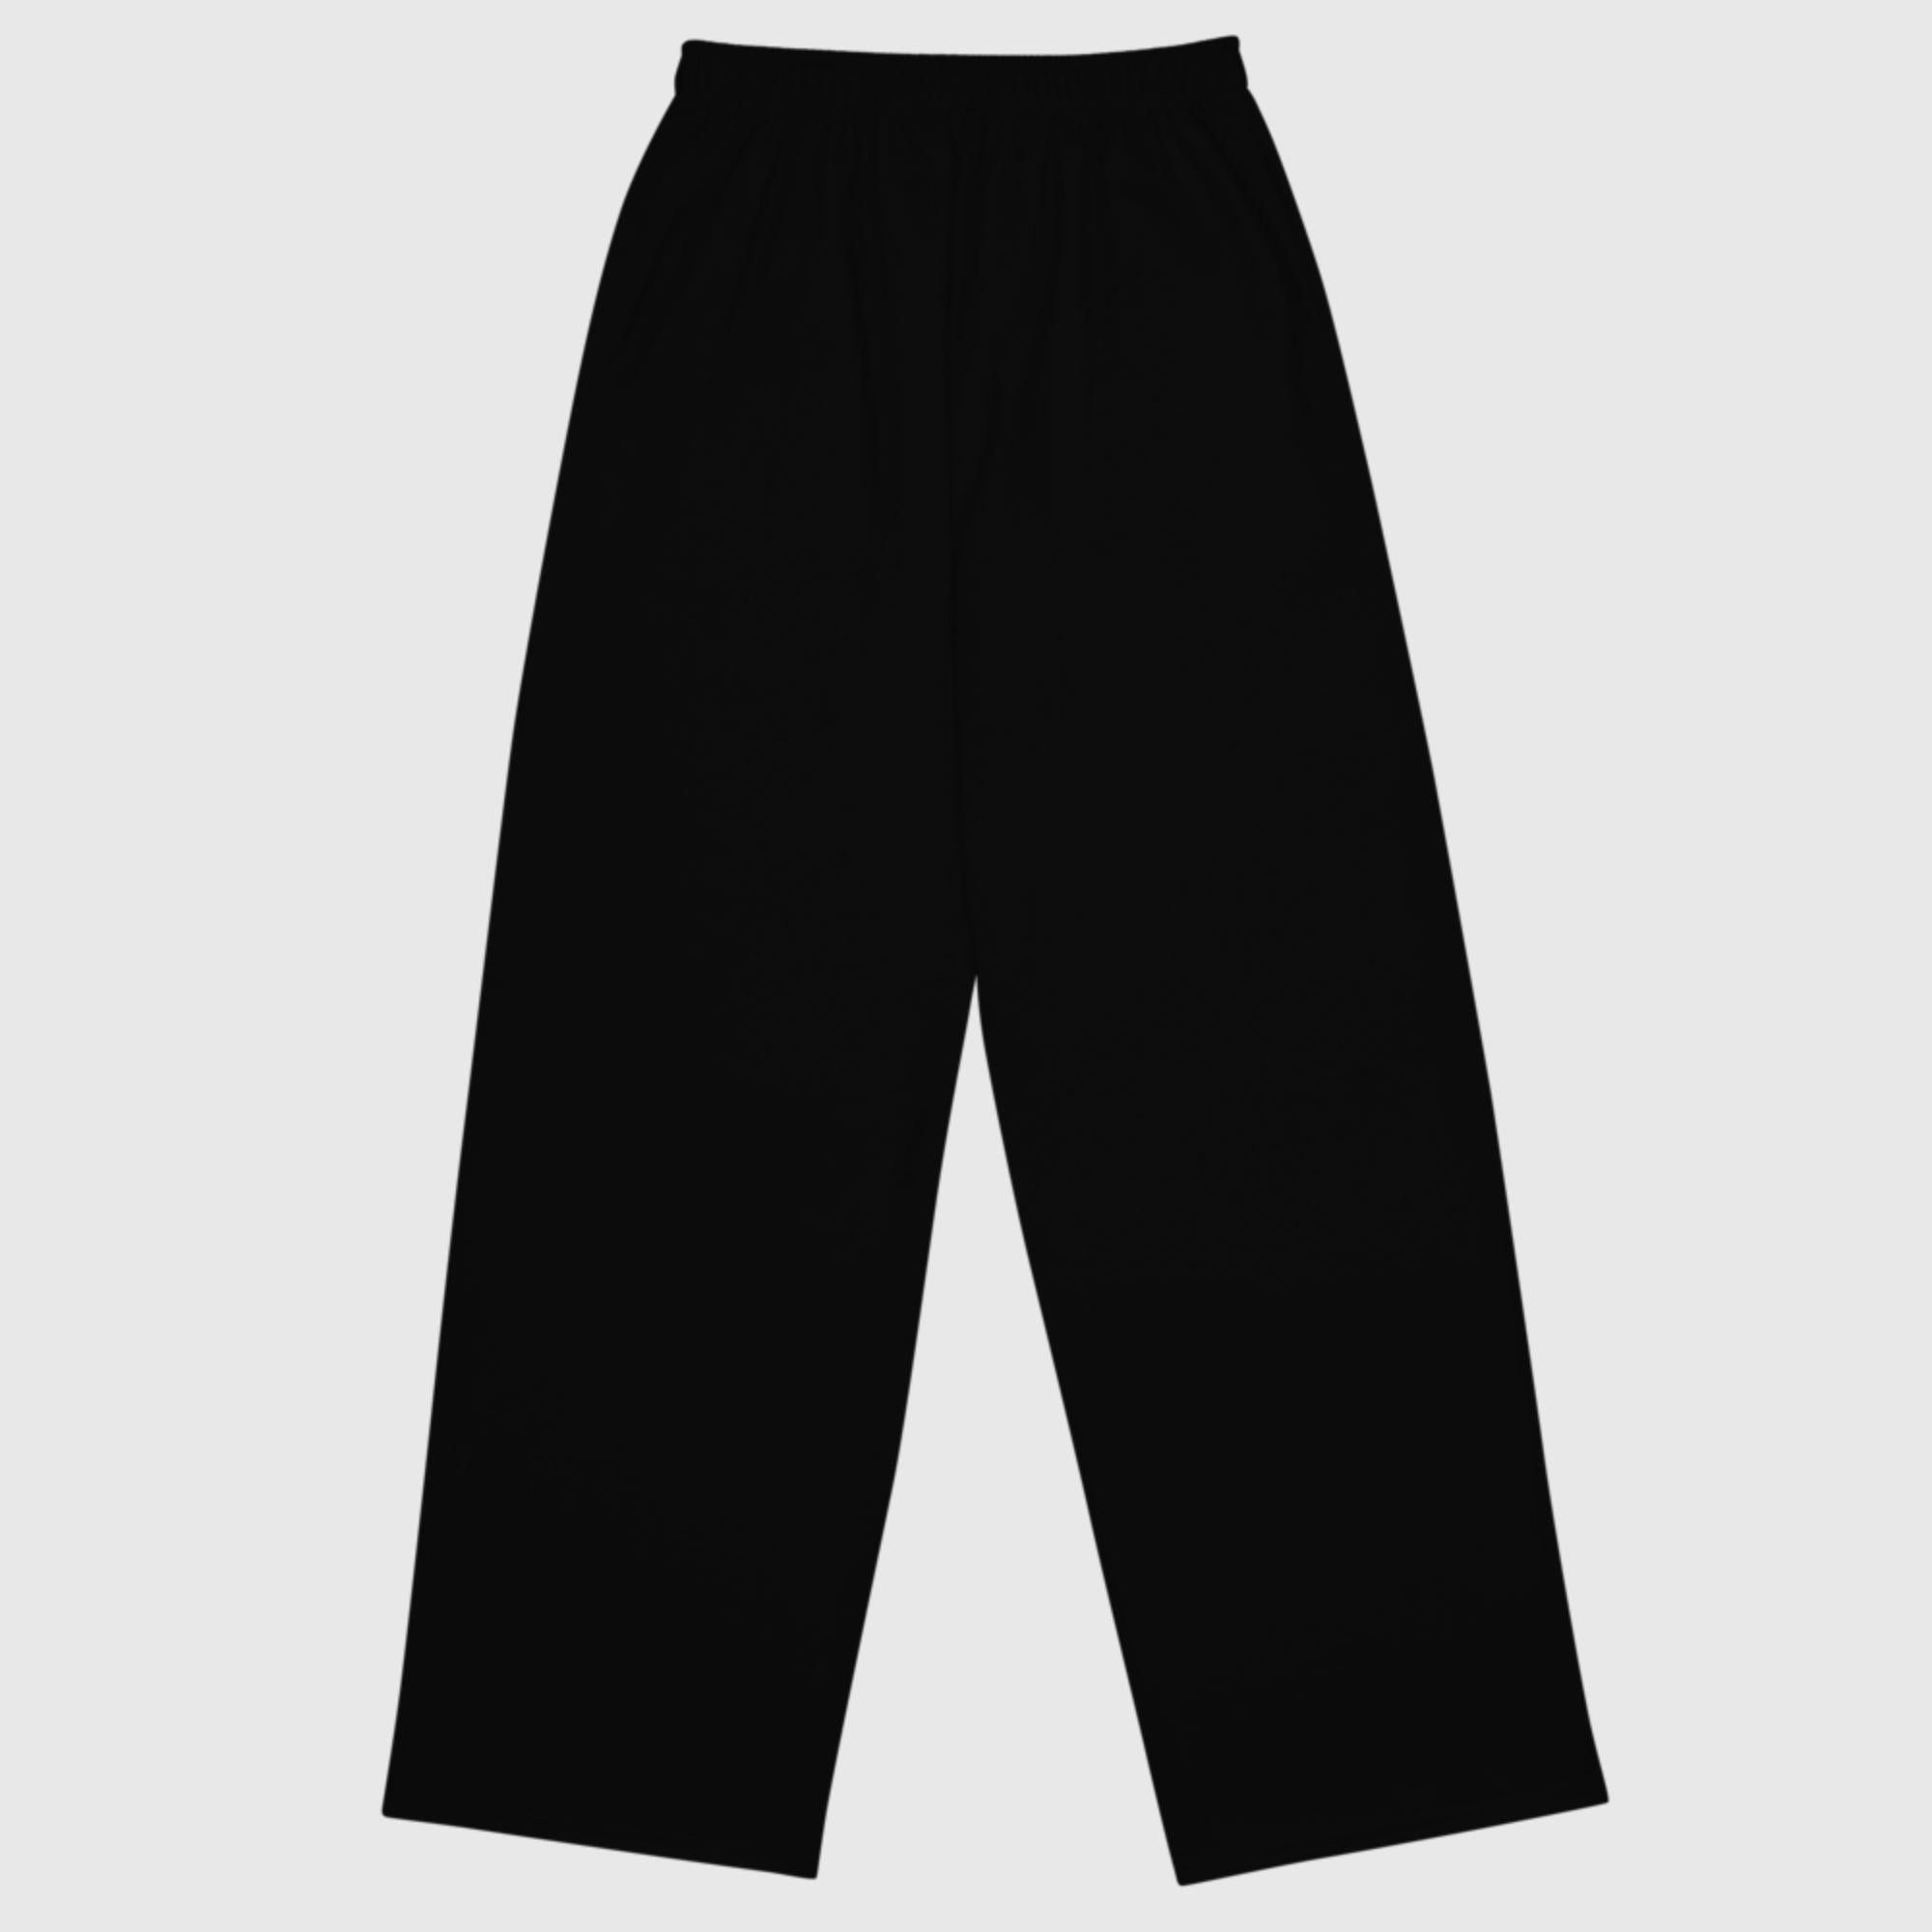 Unisex wide-leg pants - Black - Sunset Harbor Clothing